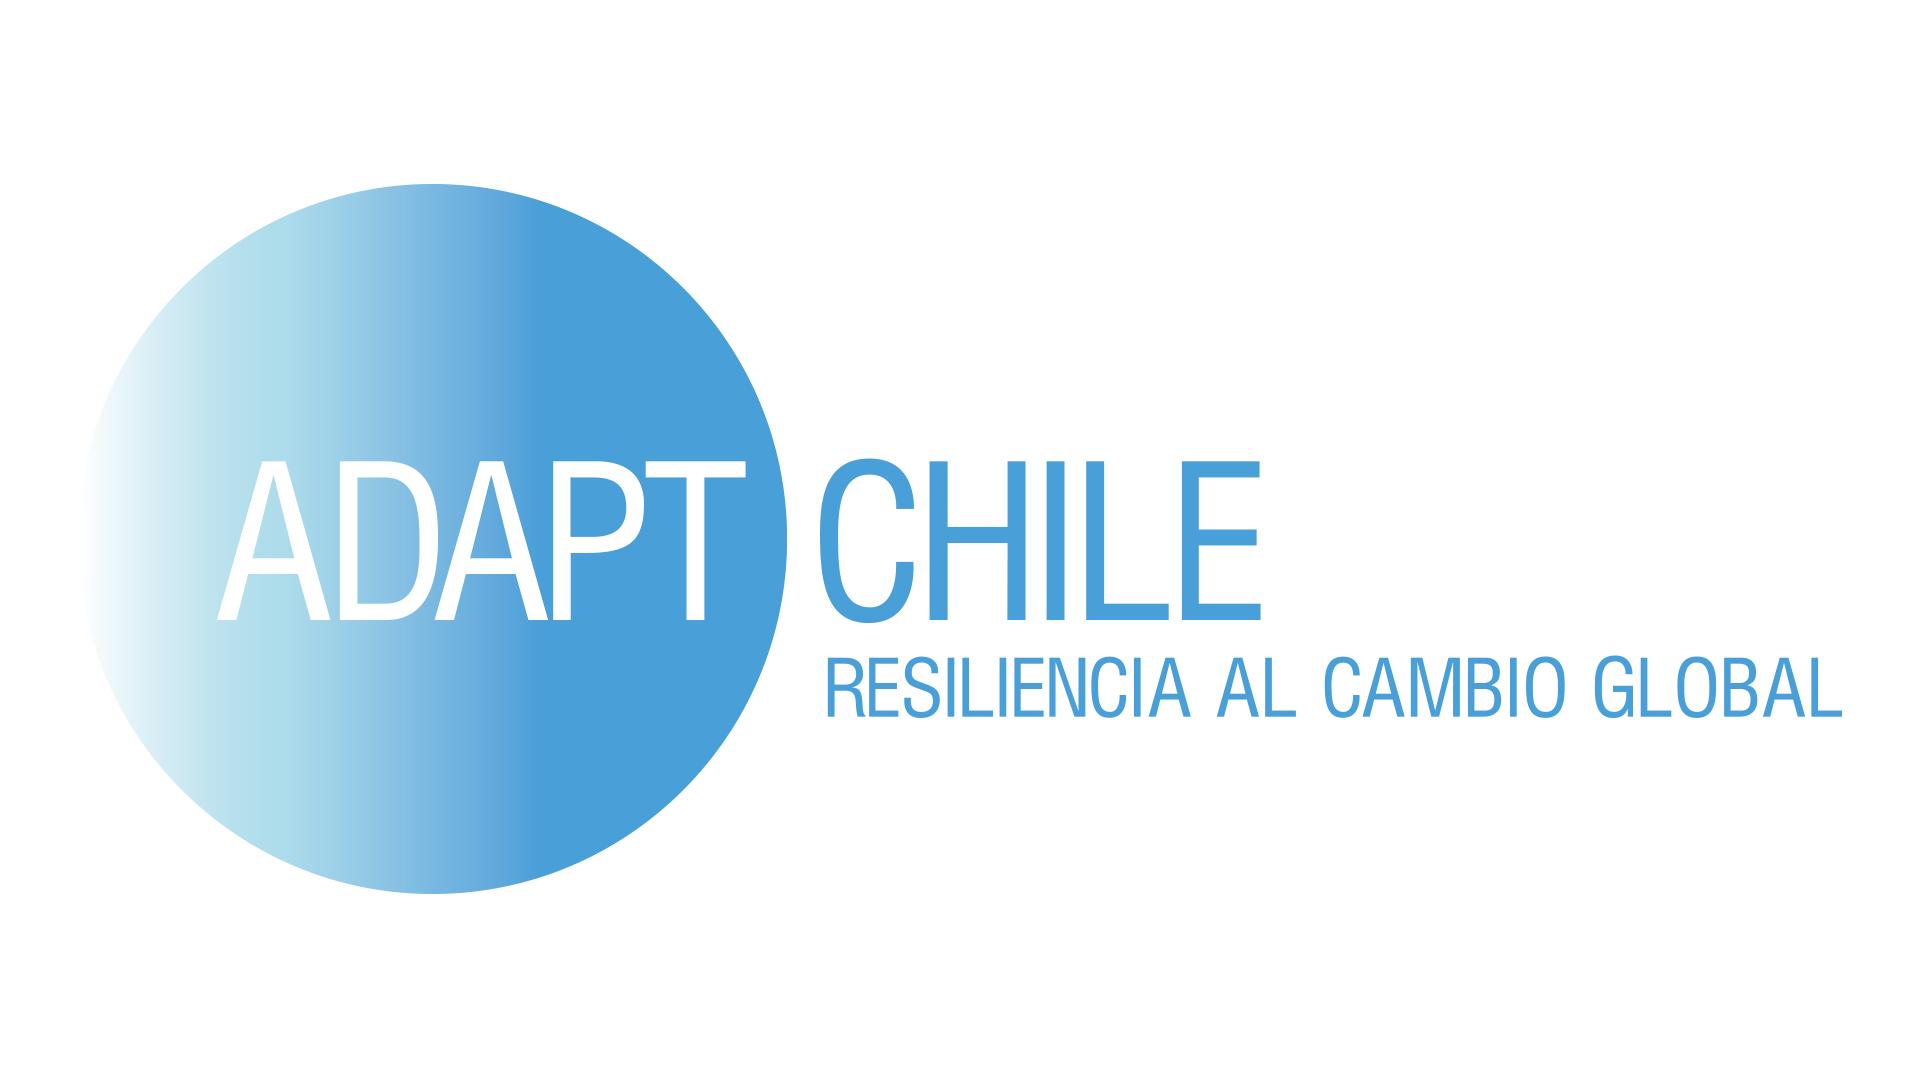 Adapt Chile